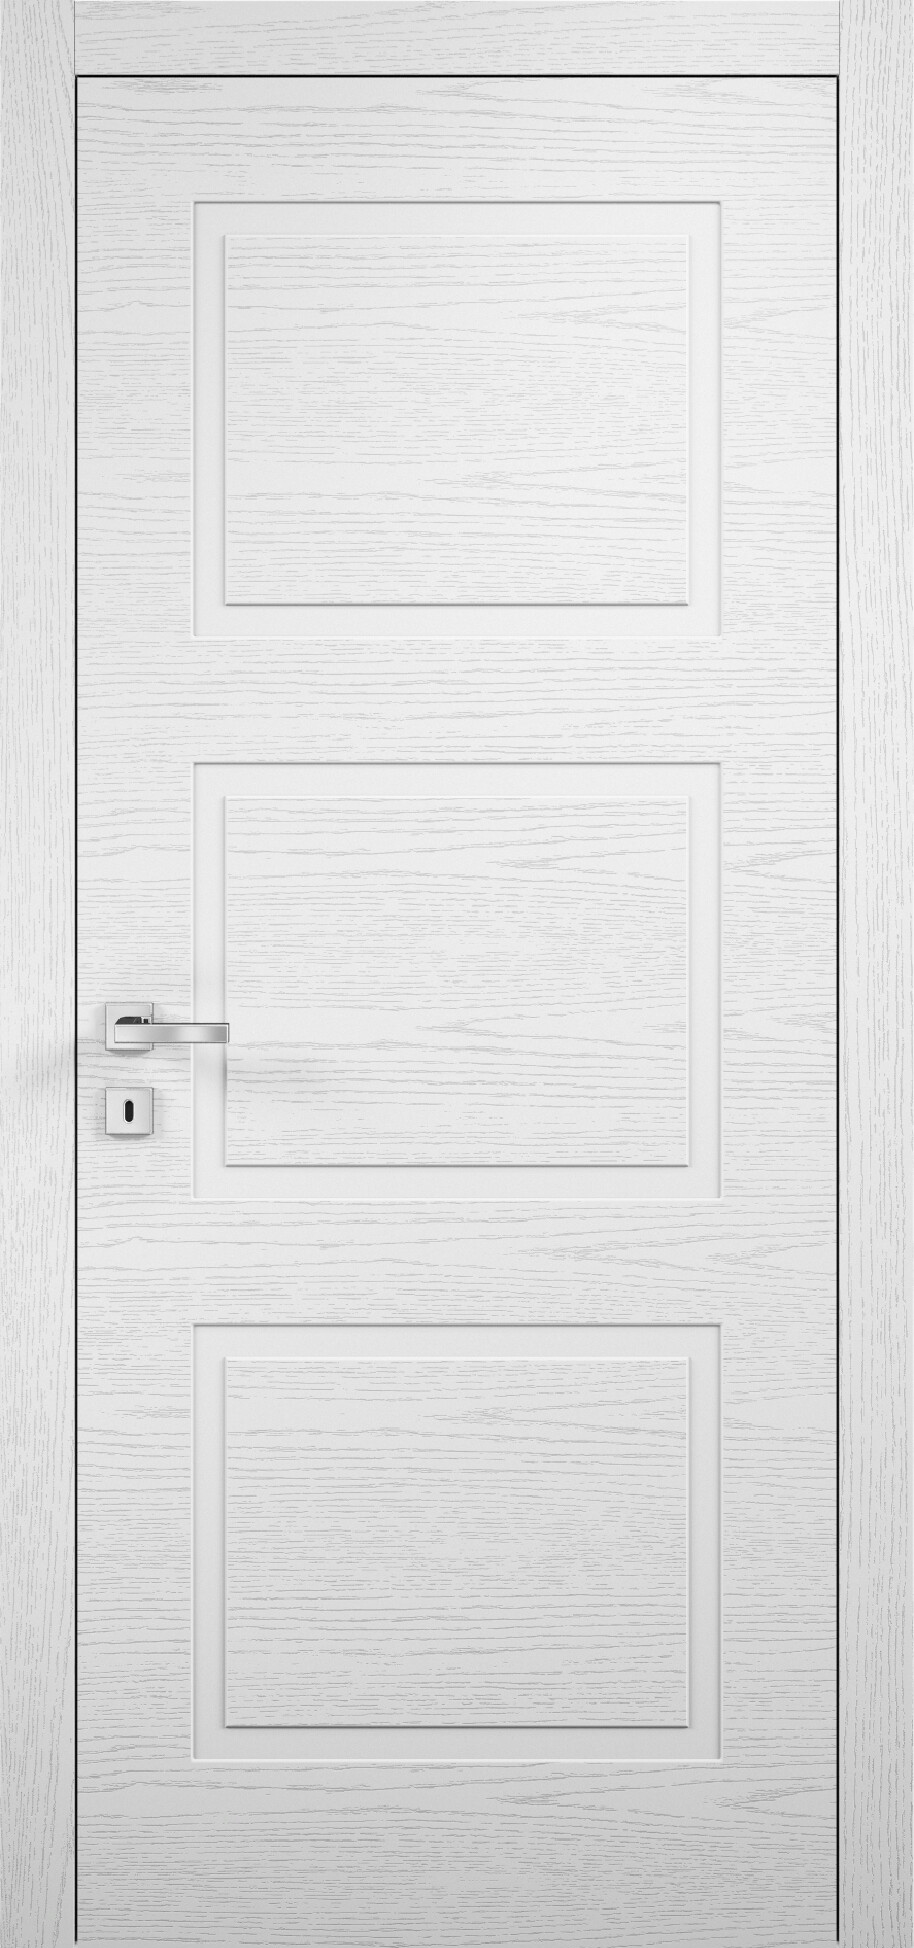 межкомнатные двери эмалированная межкомнатная дверь glamour 105 эмаль белая 